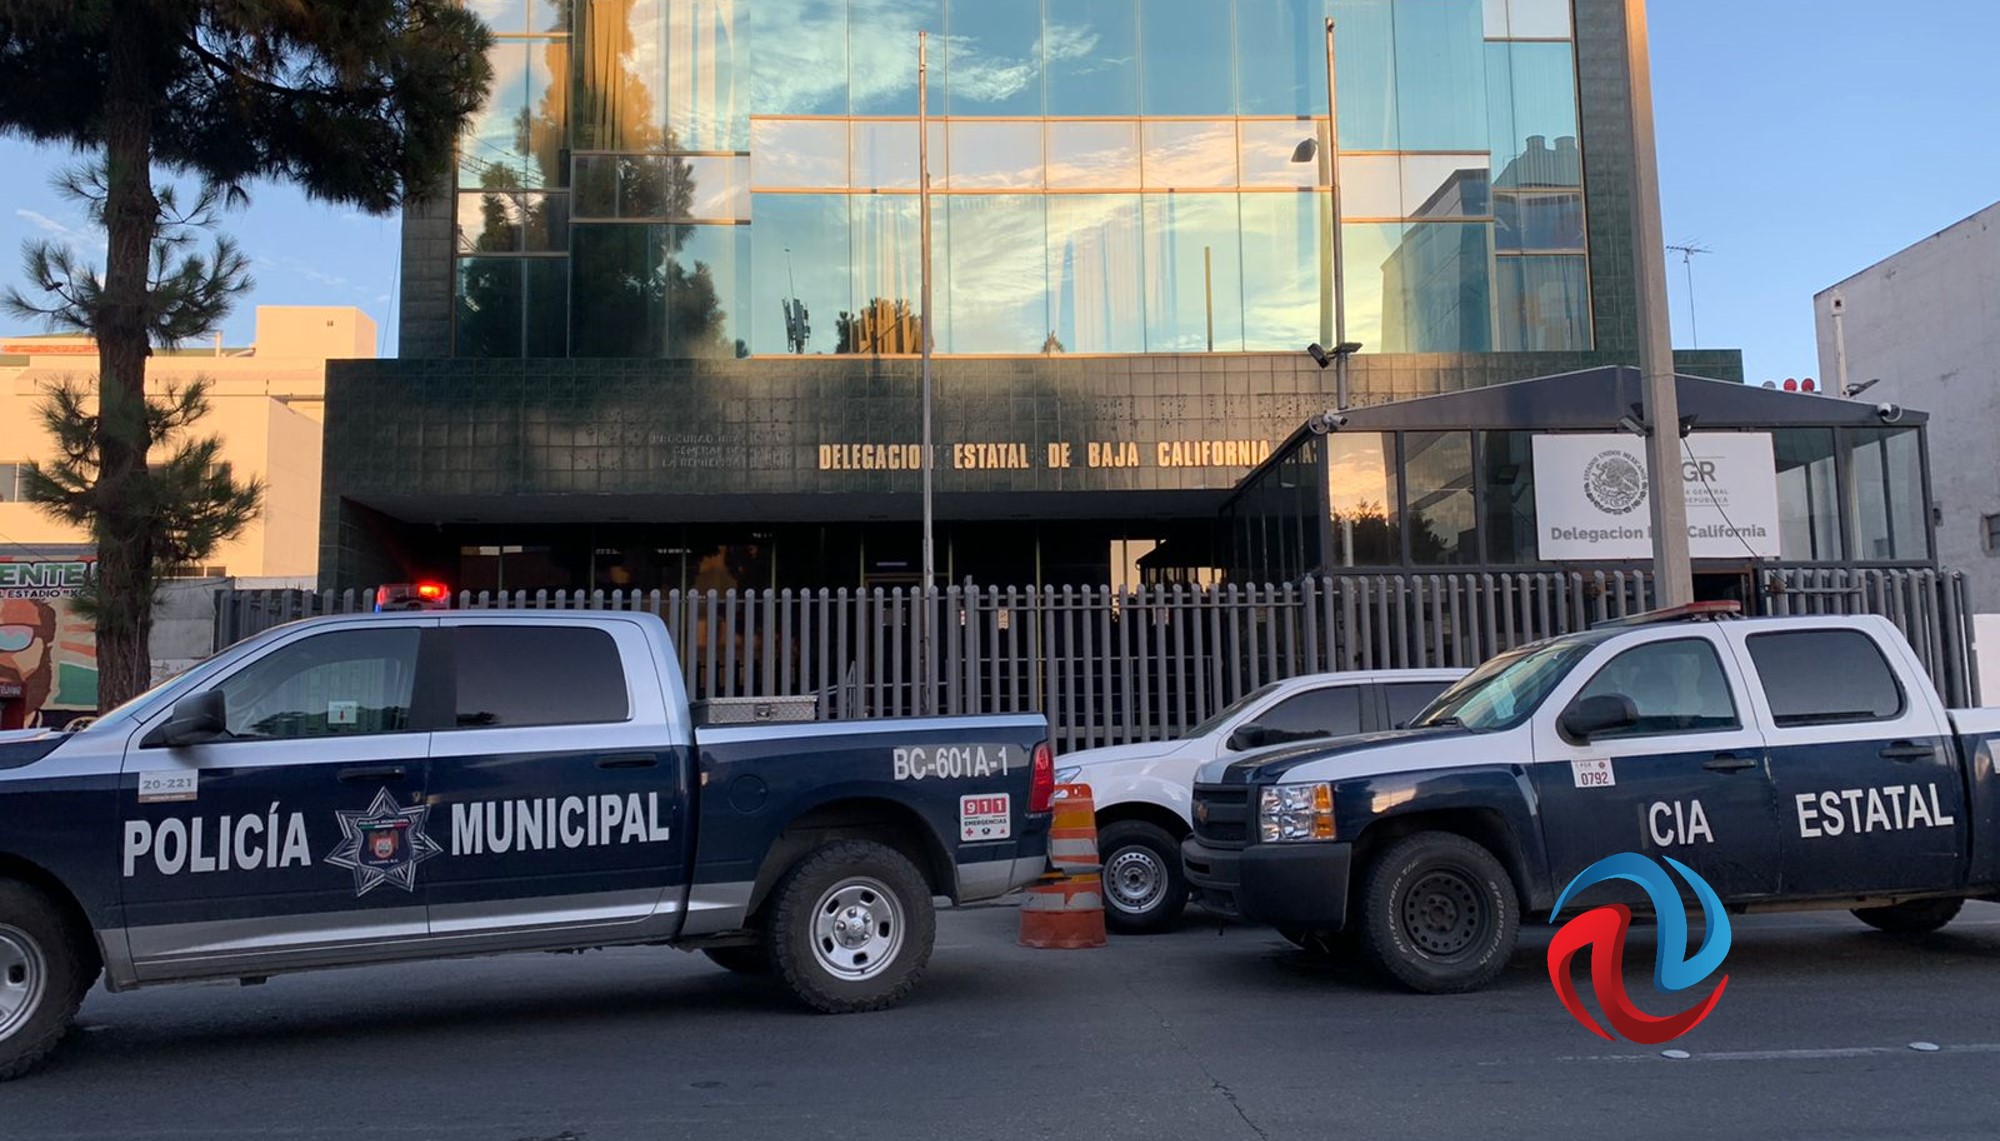 Fuerte decomiso en Tijuana; hay 6 detenidos 